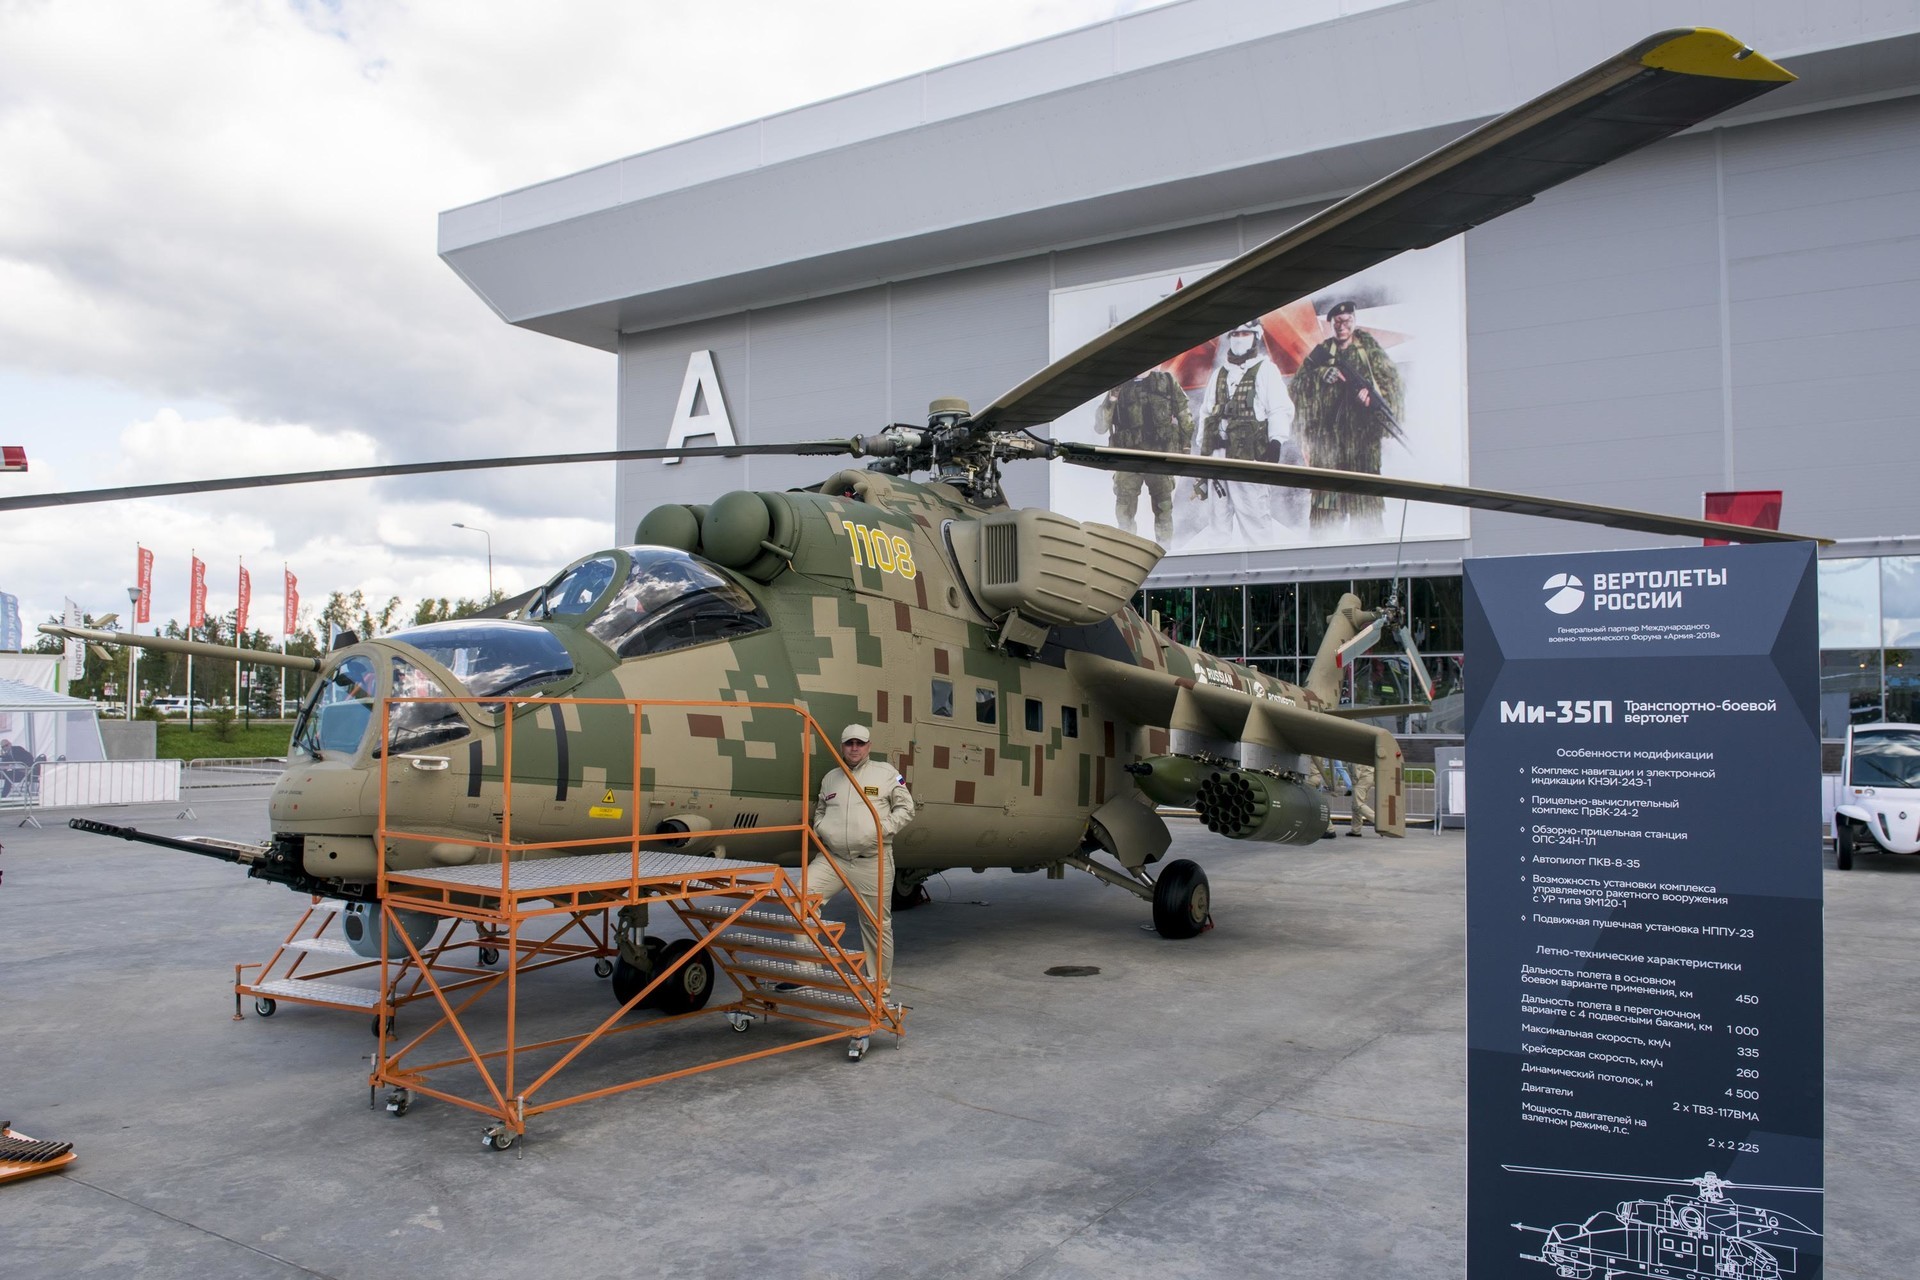 Mi-35P

